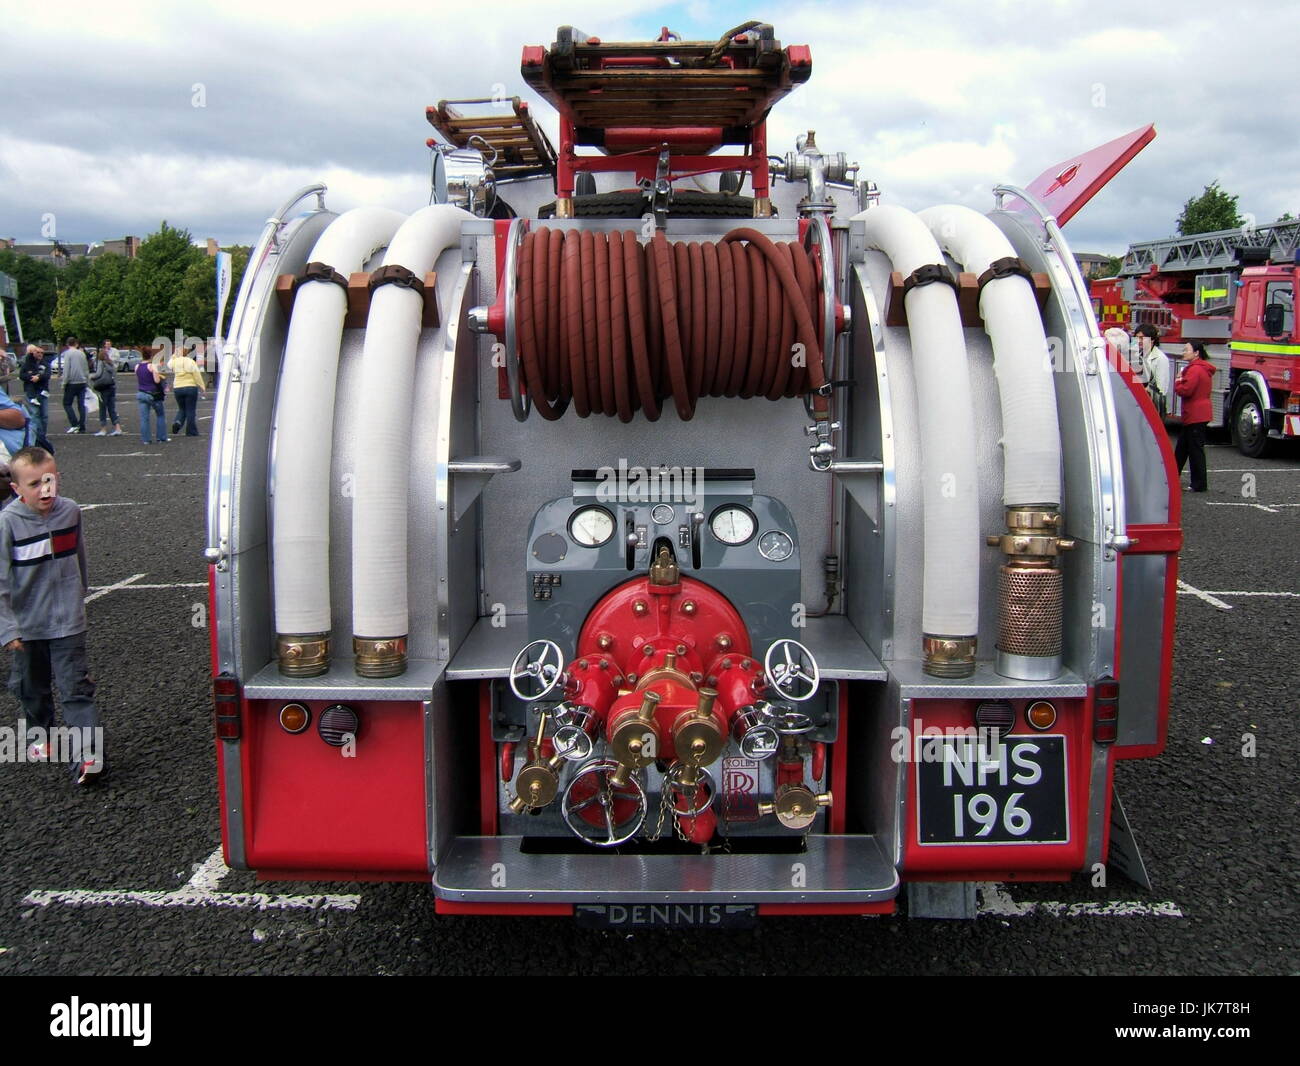 Strathclyde Feuerwehr Erhaltung Gruppe Gesellschaft Vintage Apparate- und Motorenbaus Feuershow Stockfoto